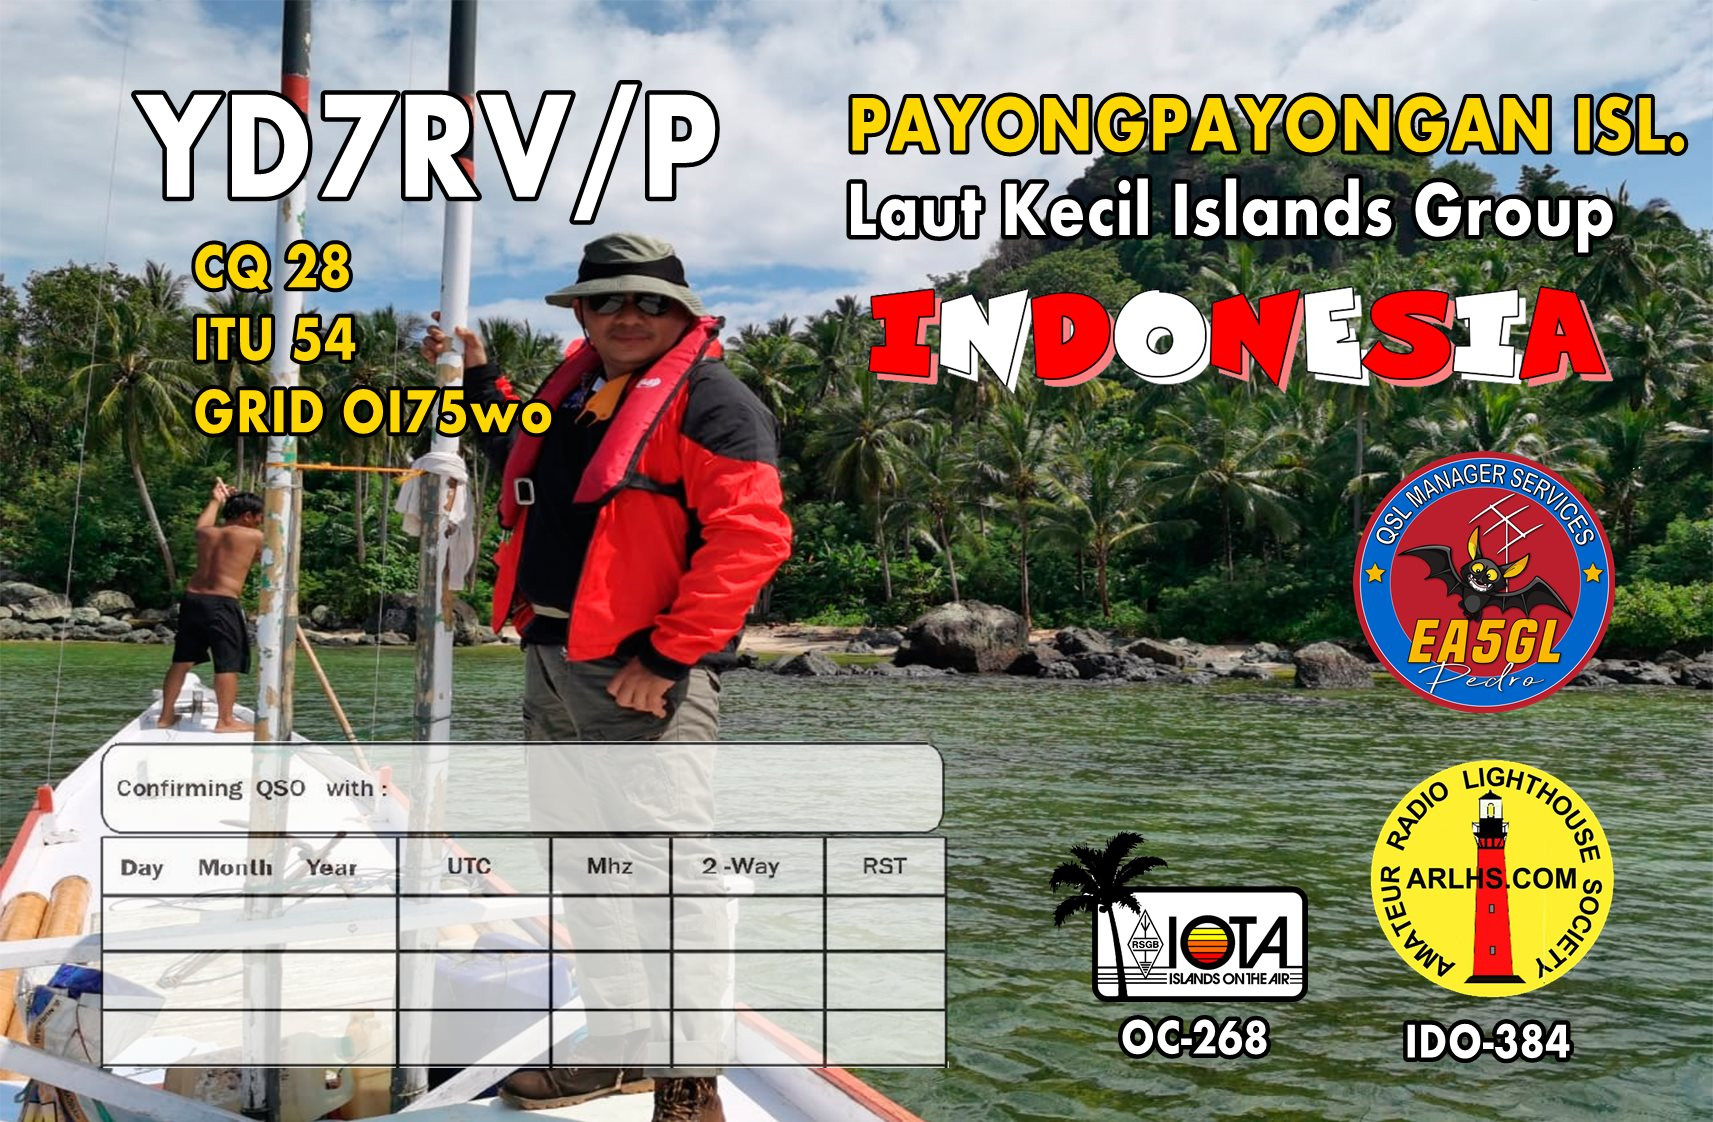 YD7RV/P Payongpayongan Island Laut Kecil Islands QSL 2